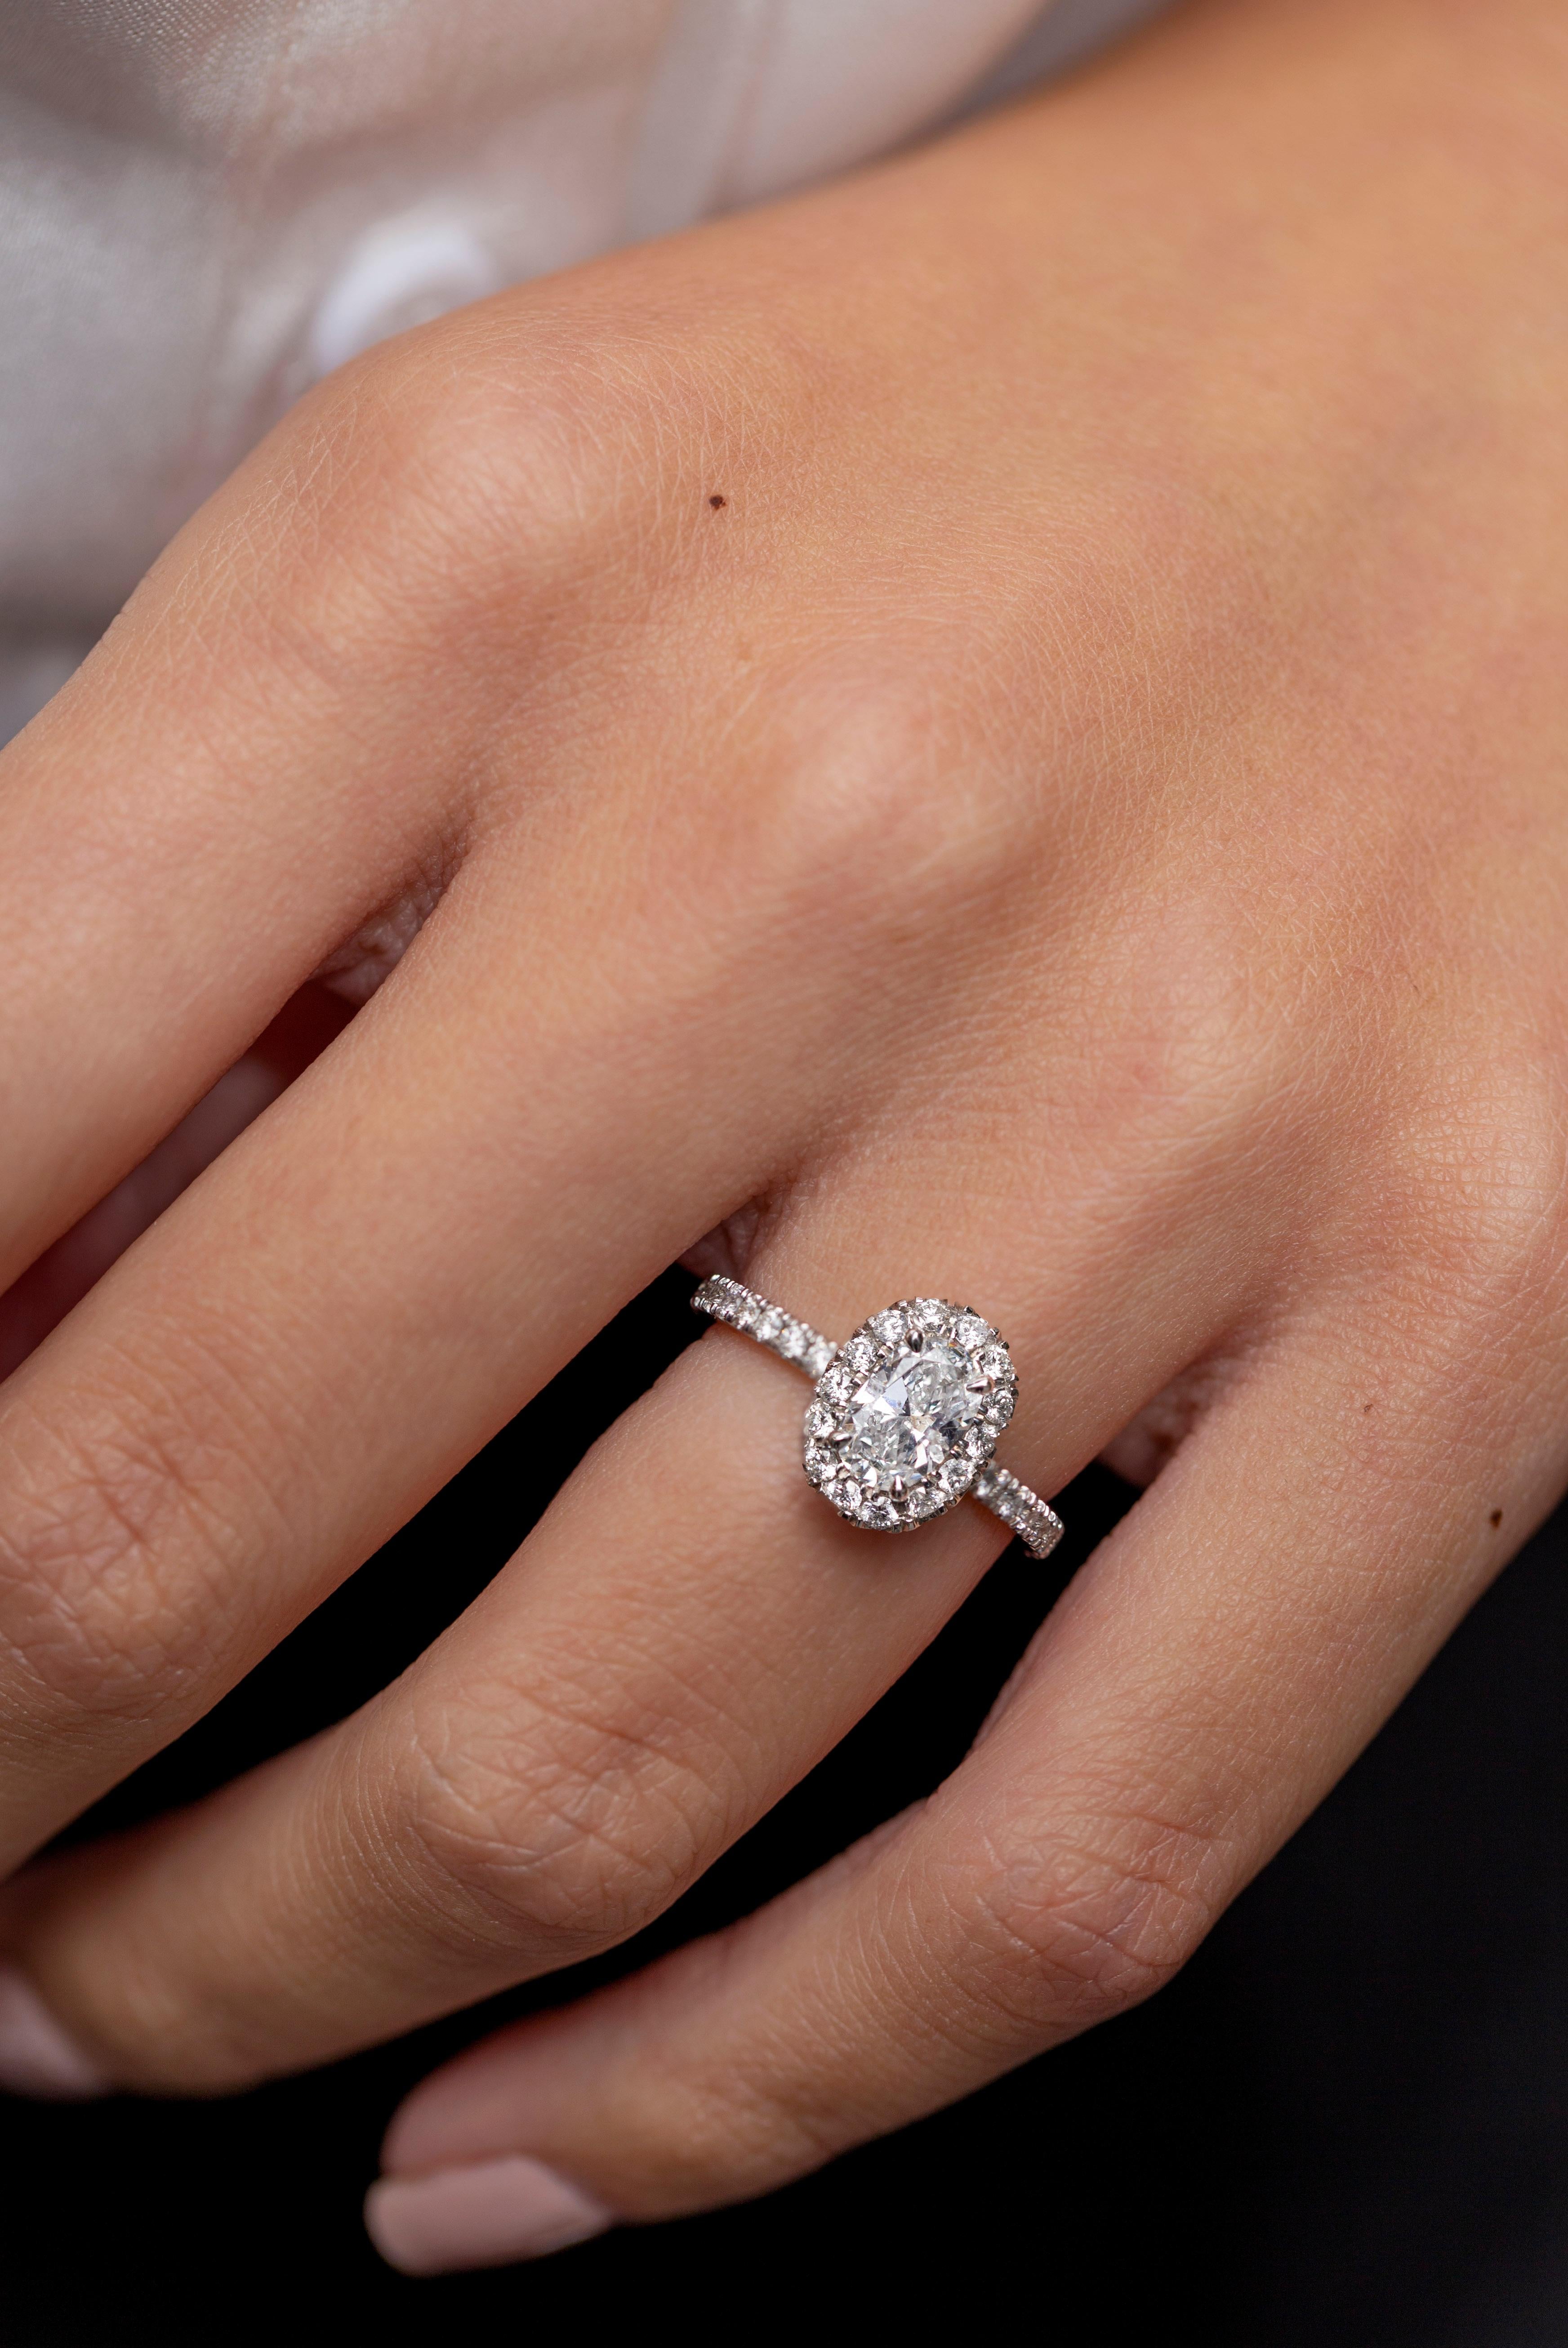 Ein gut gearbeiteter Verlobungsring mit einem oval geschliffenen Diamanten von 0,60 Karat in einer nahtlosen Diamant-Halo-Fassung. Fein gearbeitet in einer polierten Platinkomposition, die mit runden Diamanten in halber Ewigkeitsfassung akzentuiert